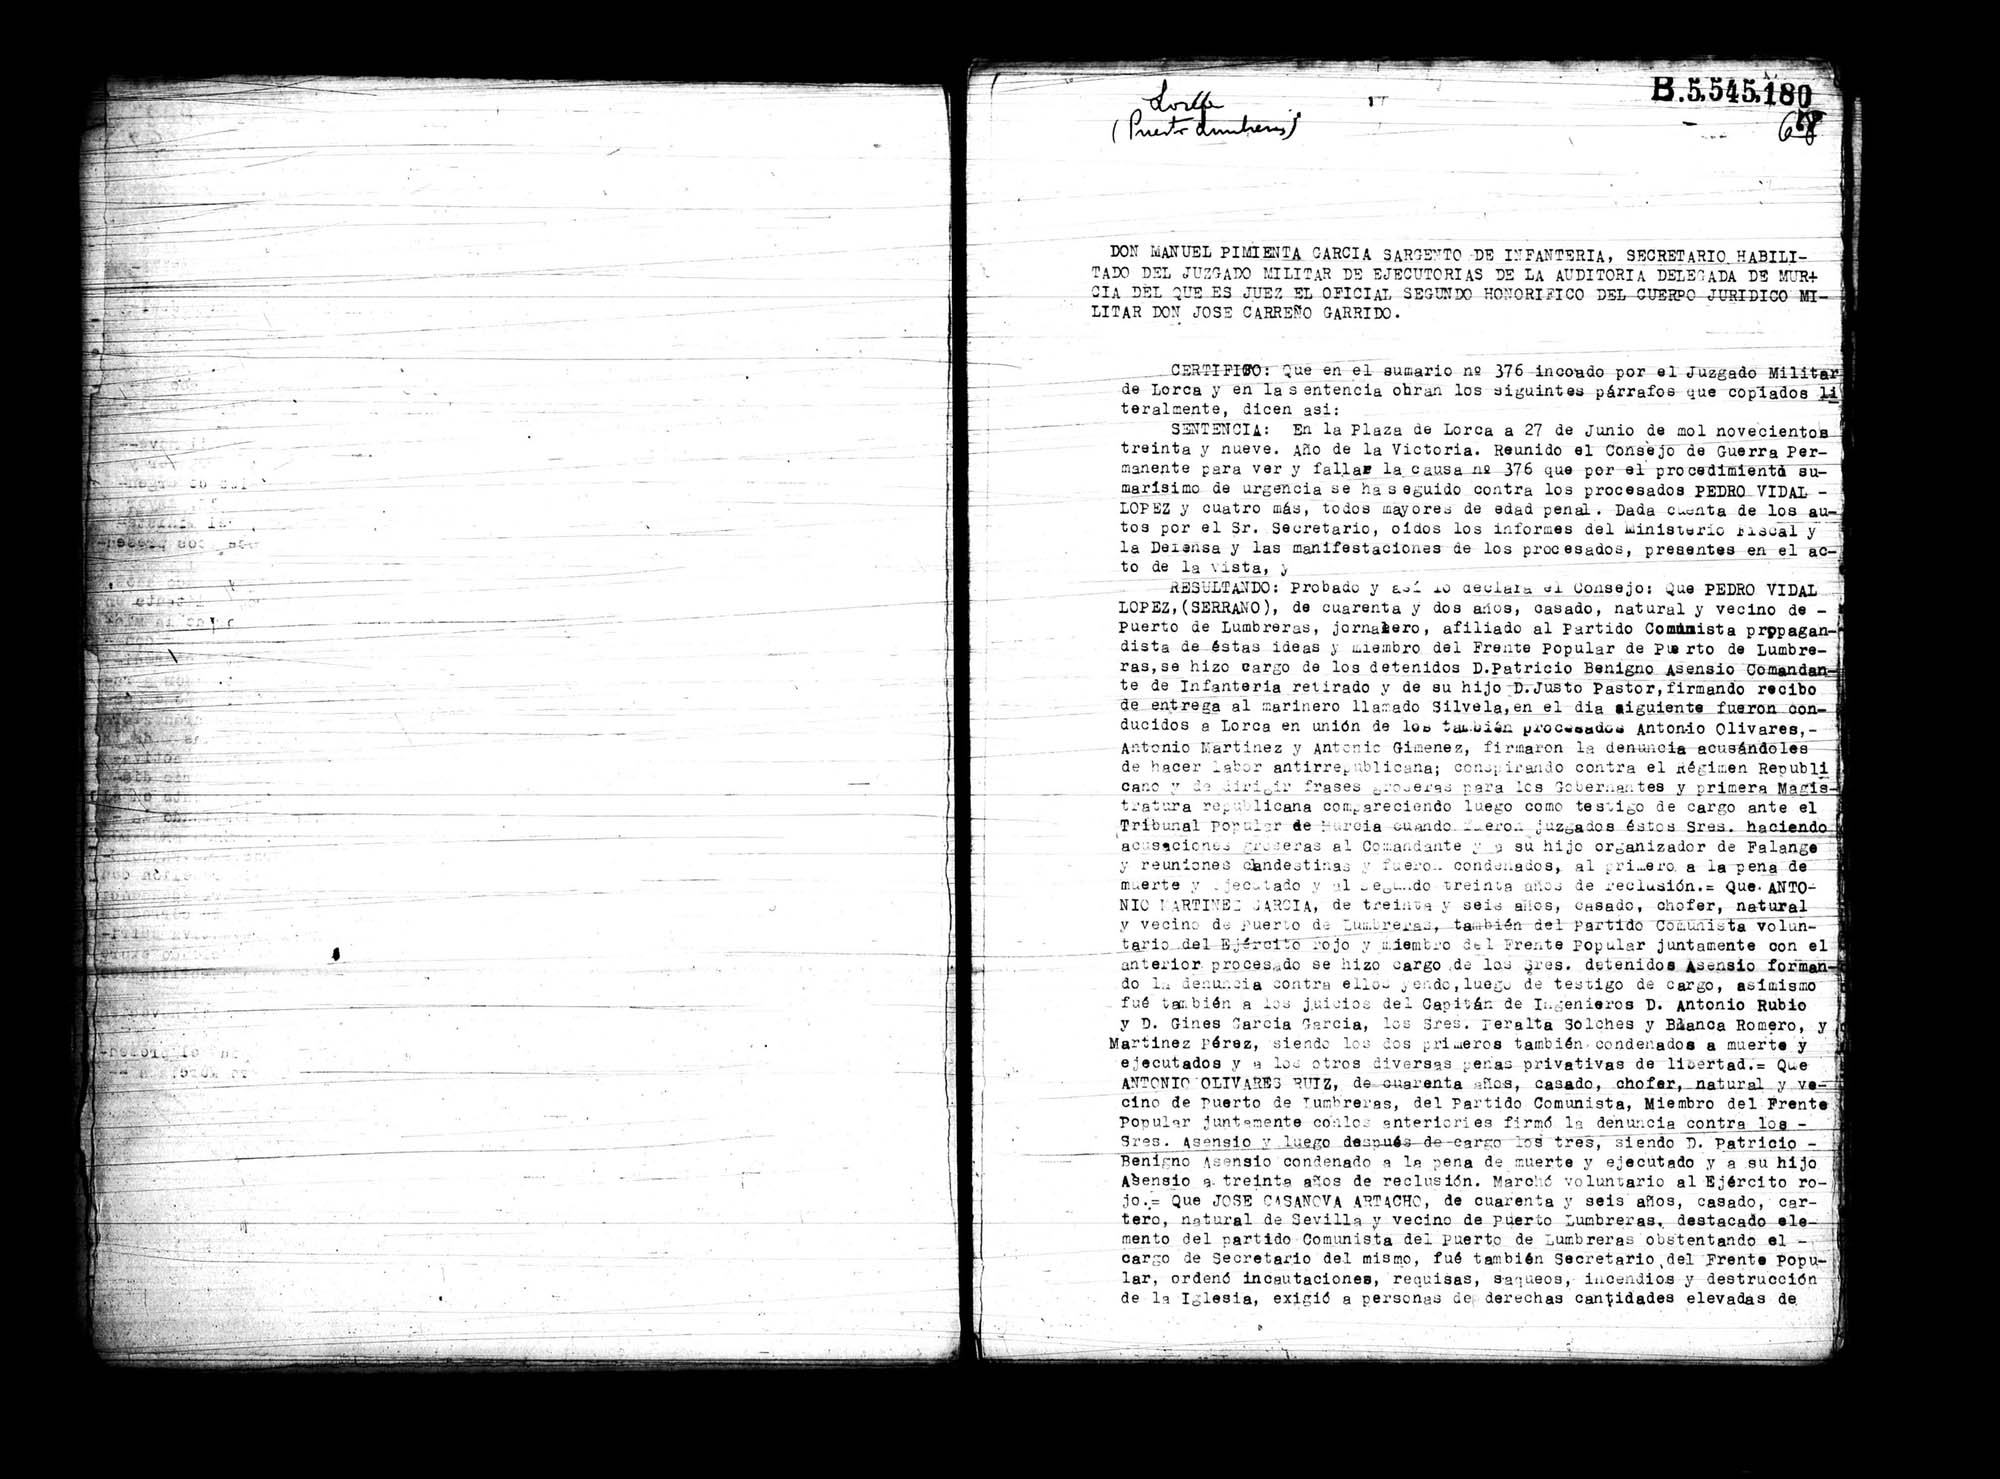 Certificado de la sentencia pronunciada contra Pedro Vidal López, Antonio Martínez García, Antonio Olivares Ruiz, José Casanova Artacho y Antonio Giménez García, causa 376, el 27 de junio de 1939 en Lorca.